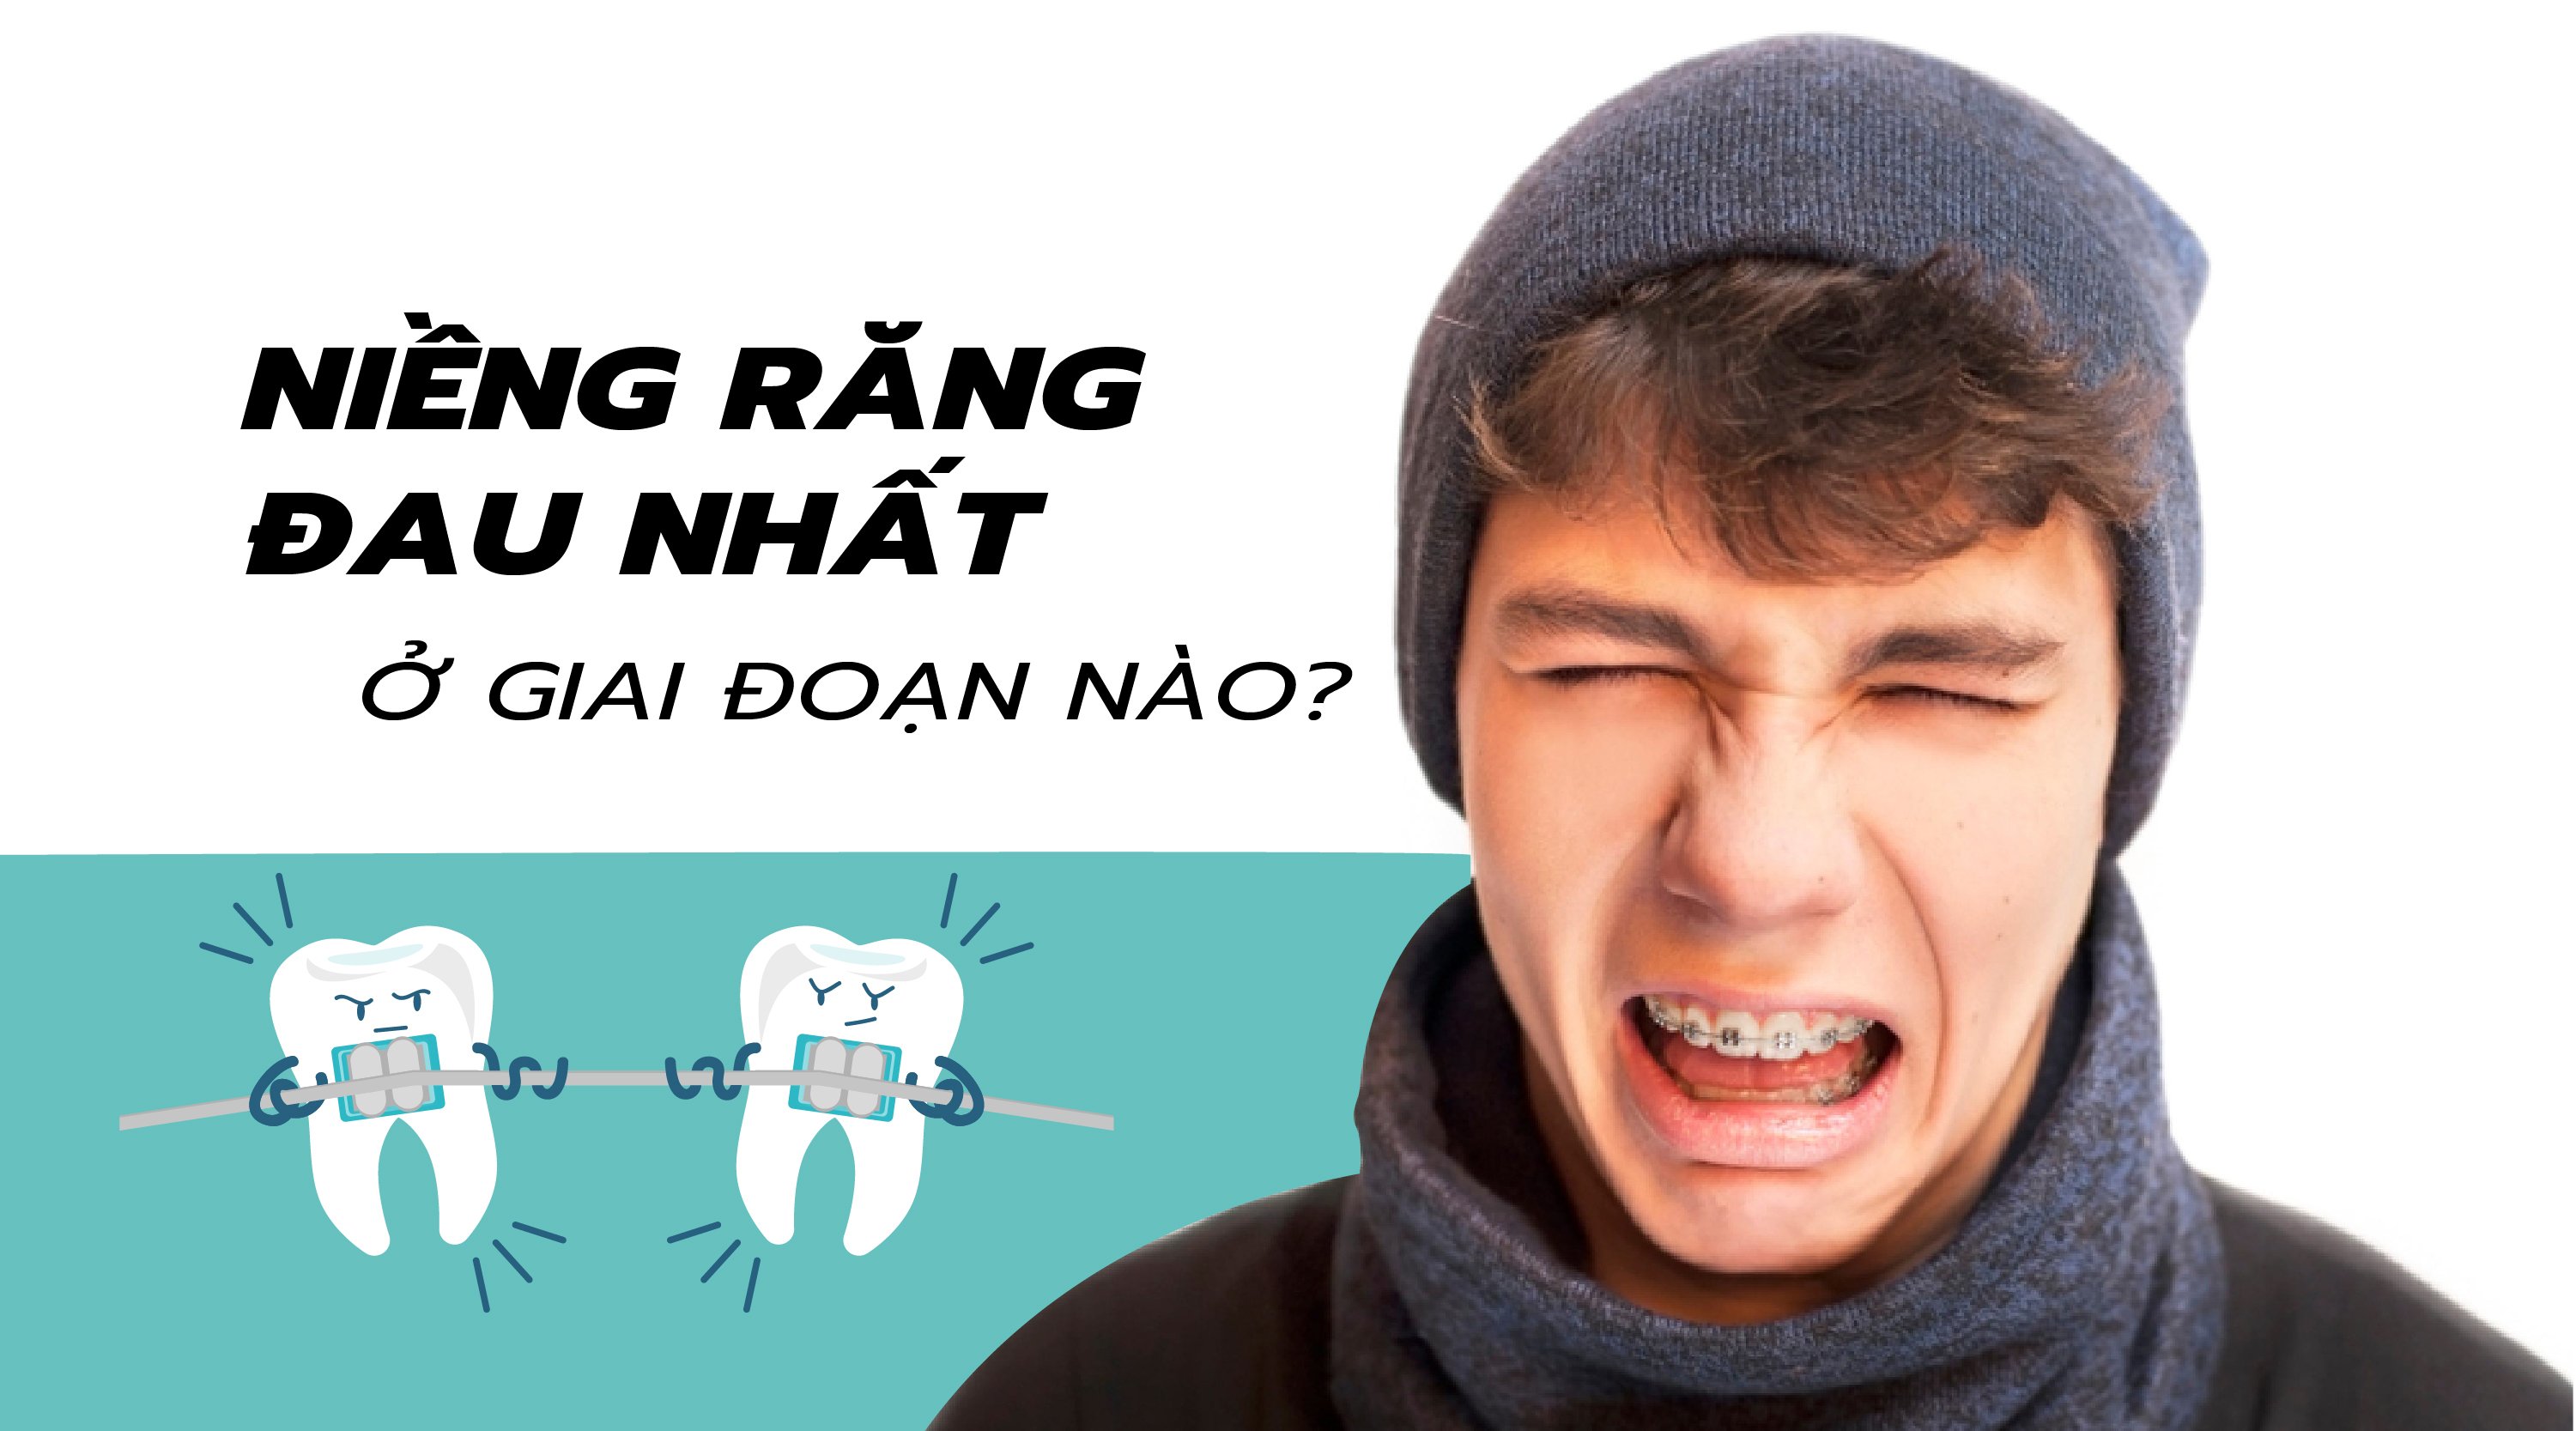 Niềng răng đau nhất ở giai đoạn nào Thái Nguyên?